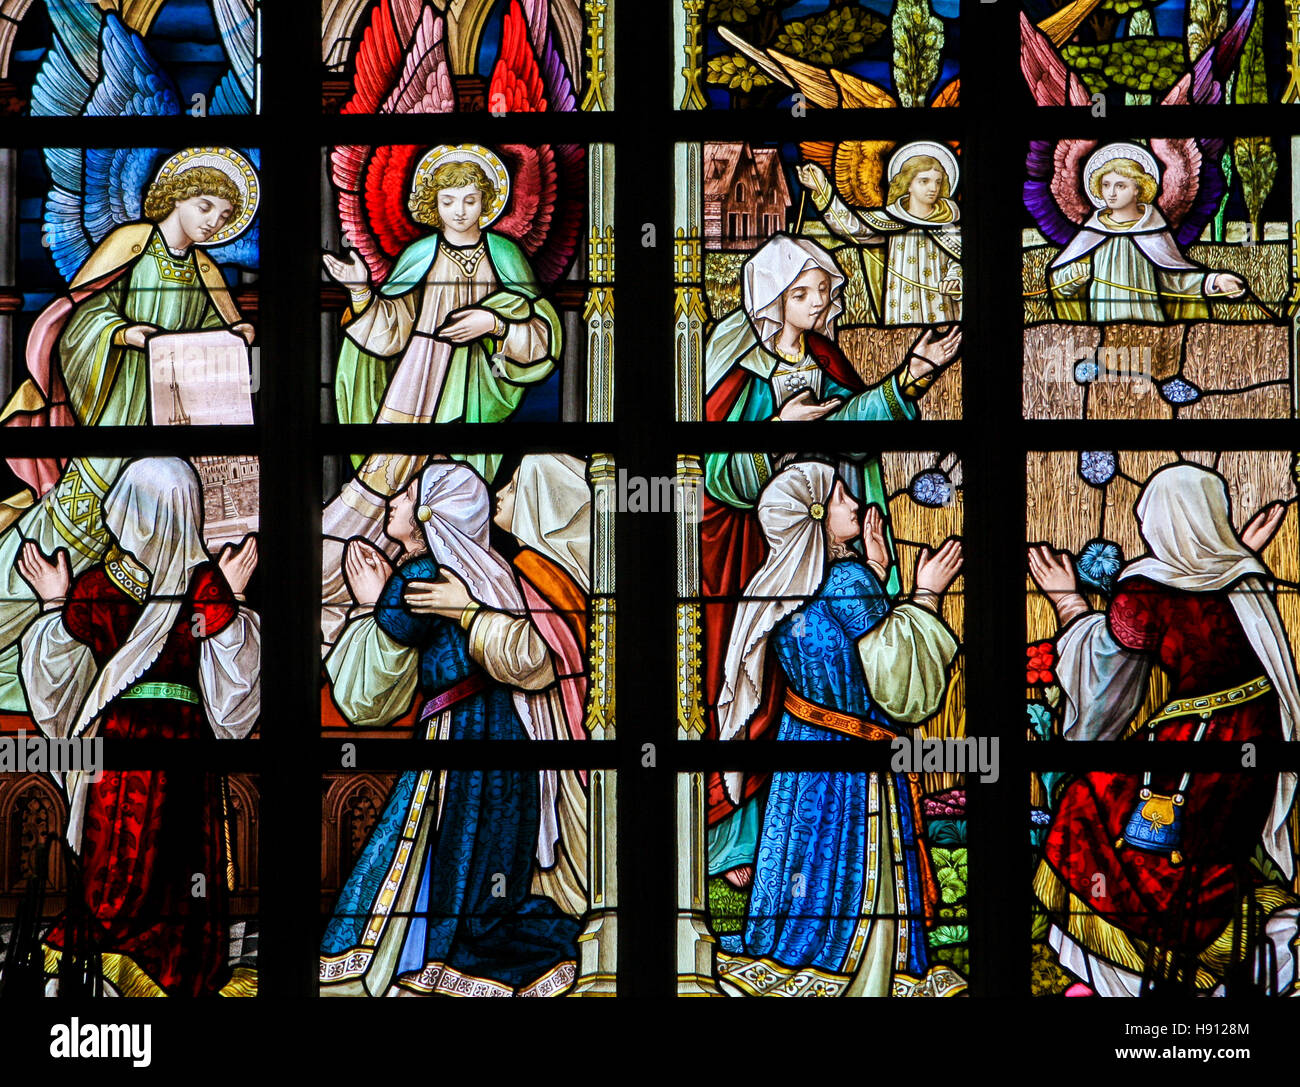 Vitrail représentant des anges et des femmes dans l'Église d'Alsemberg, Belgique. Banque D'Images